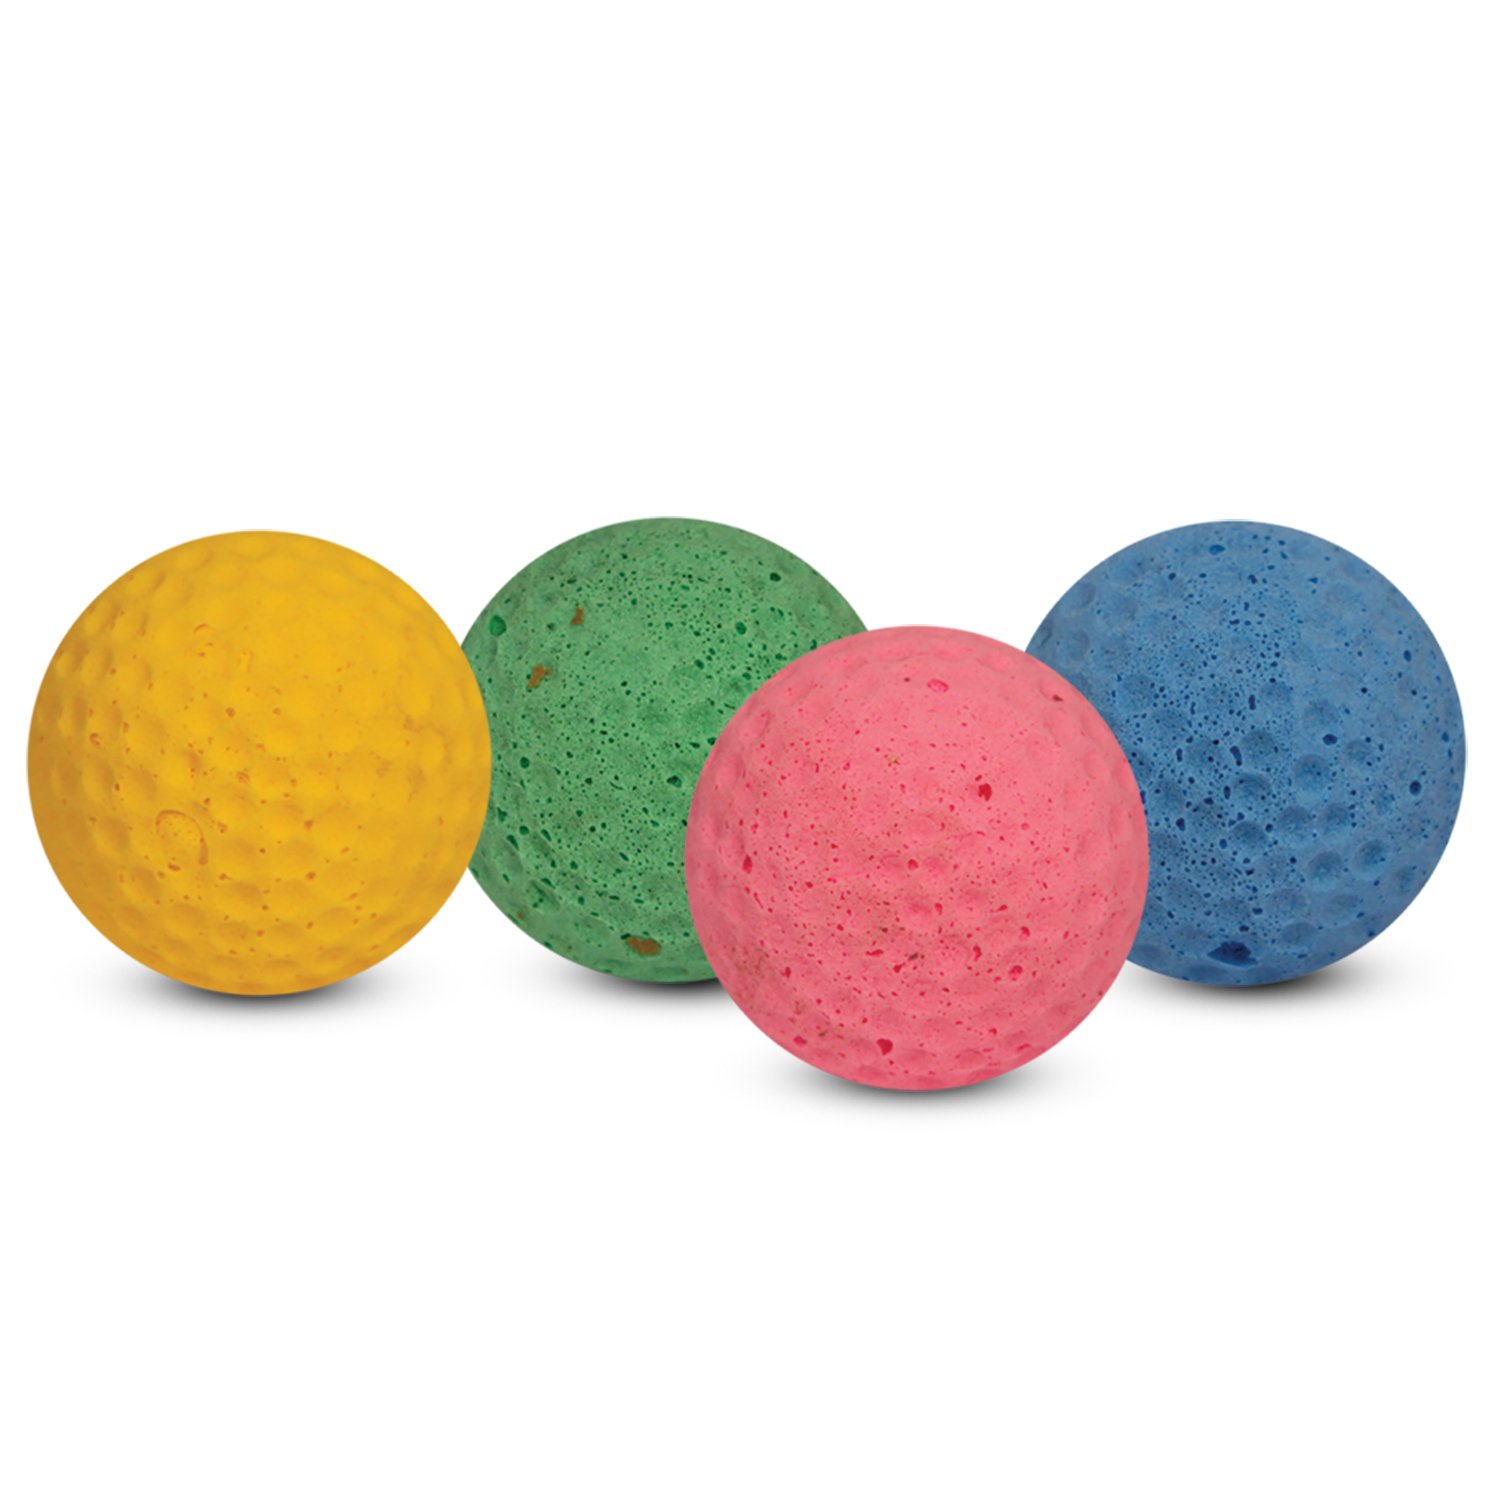 Мячик зефирный гольф 4,5 см одноцветный, Каскад от зоомагазина Дино Зоо